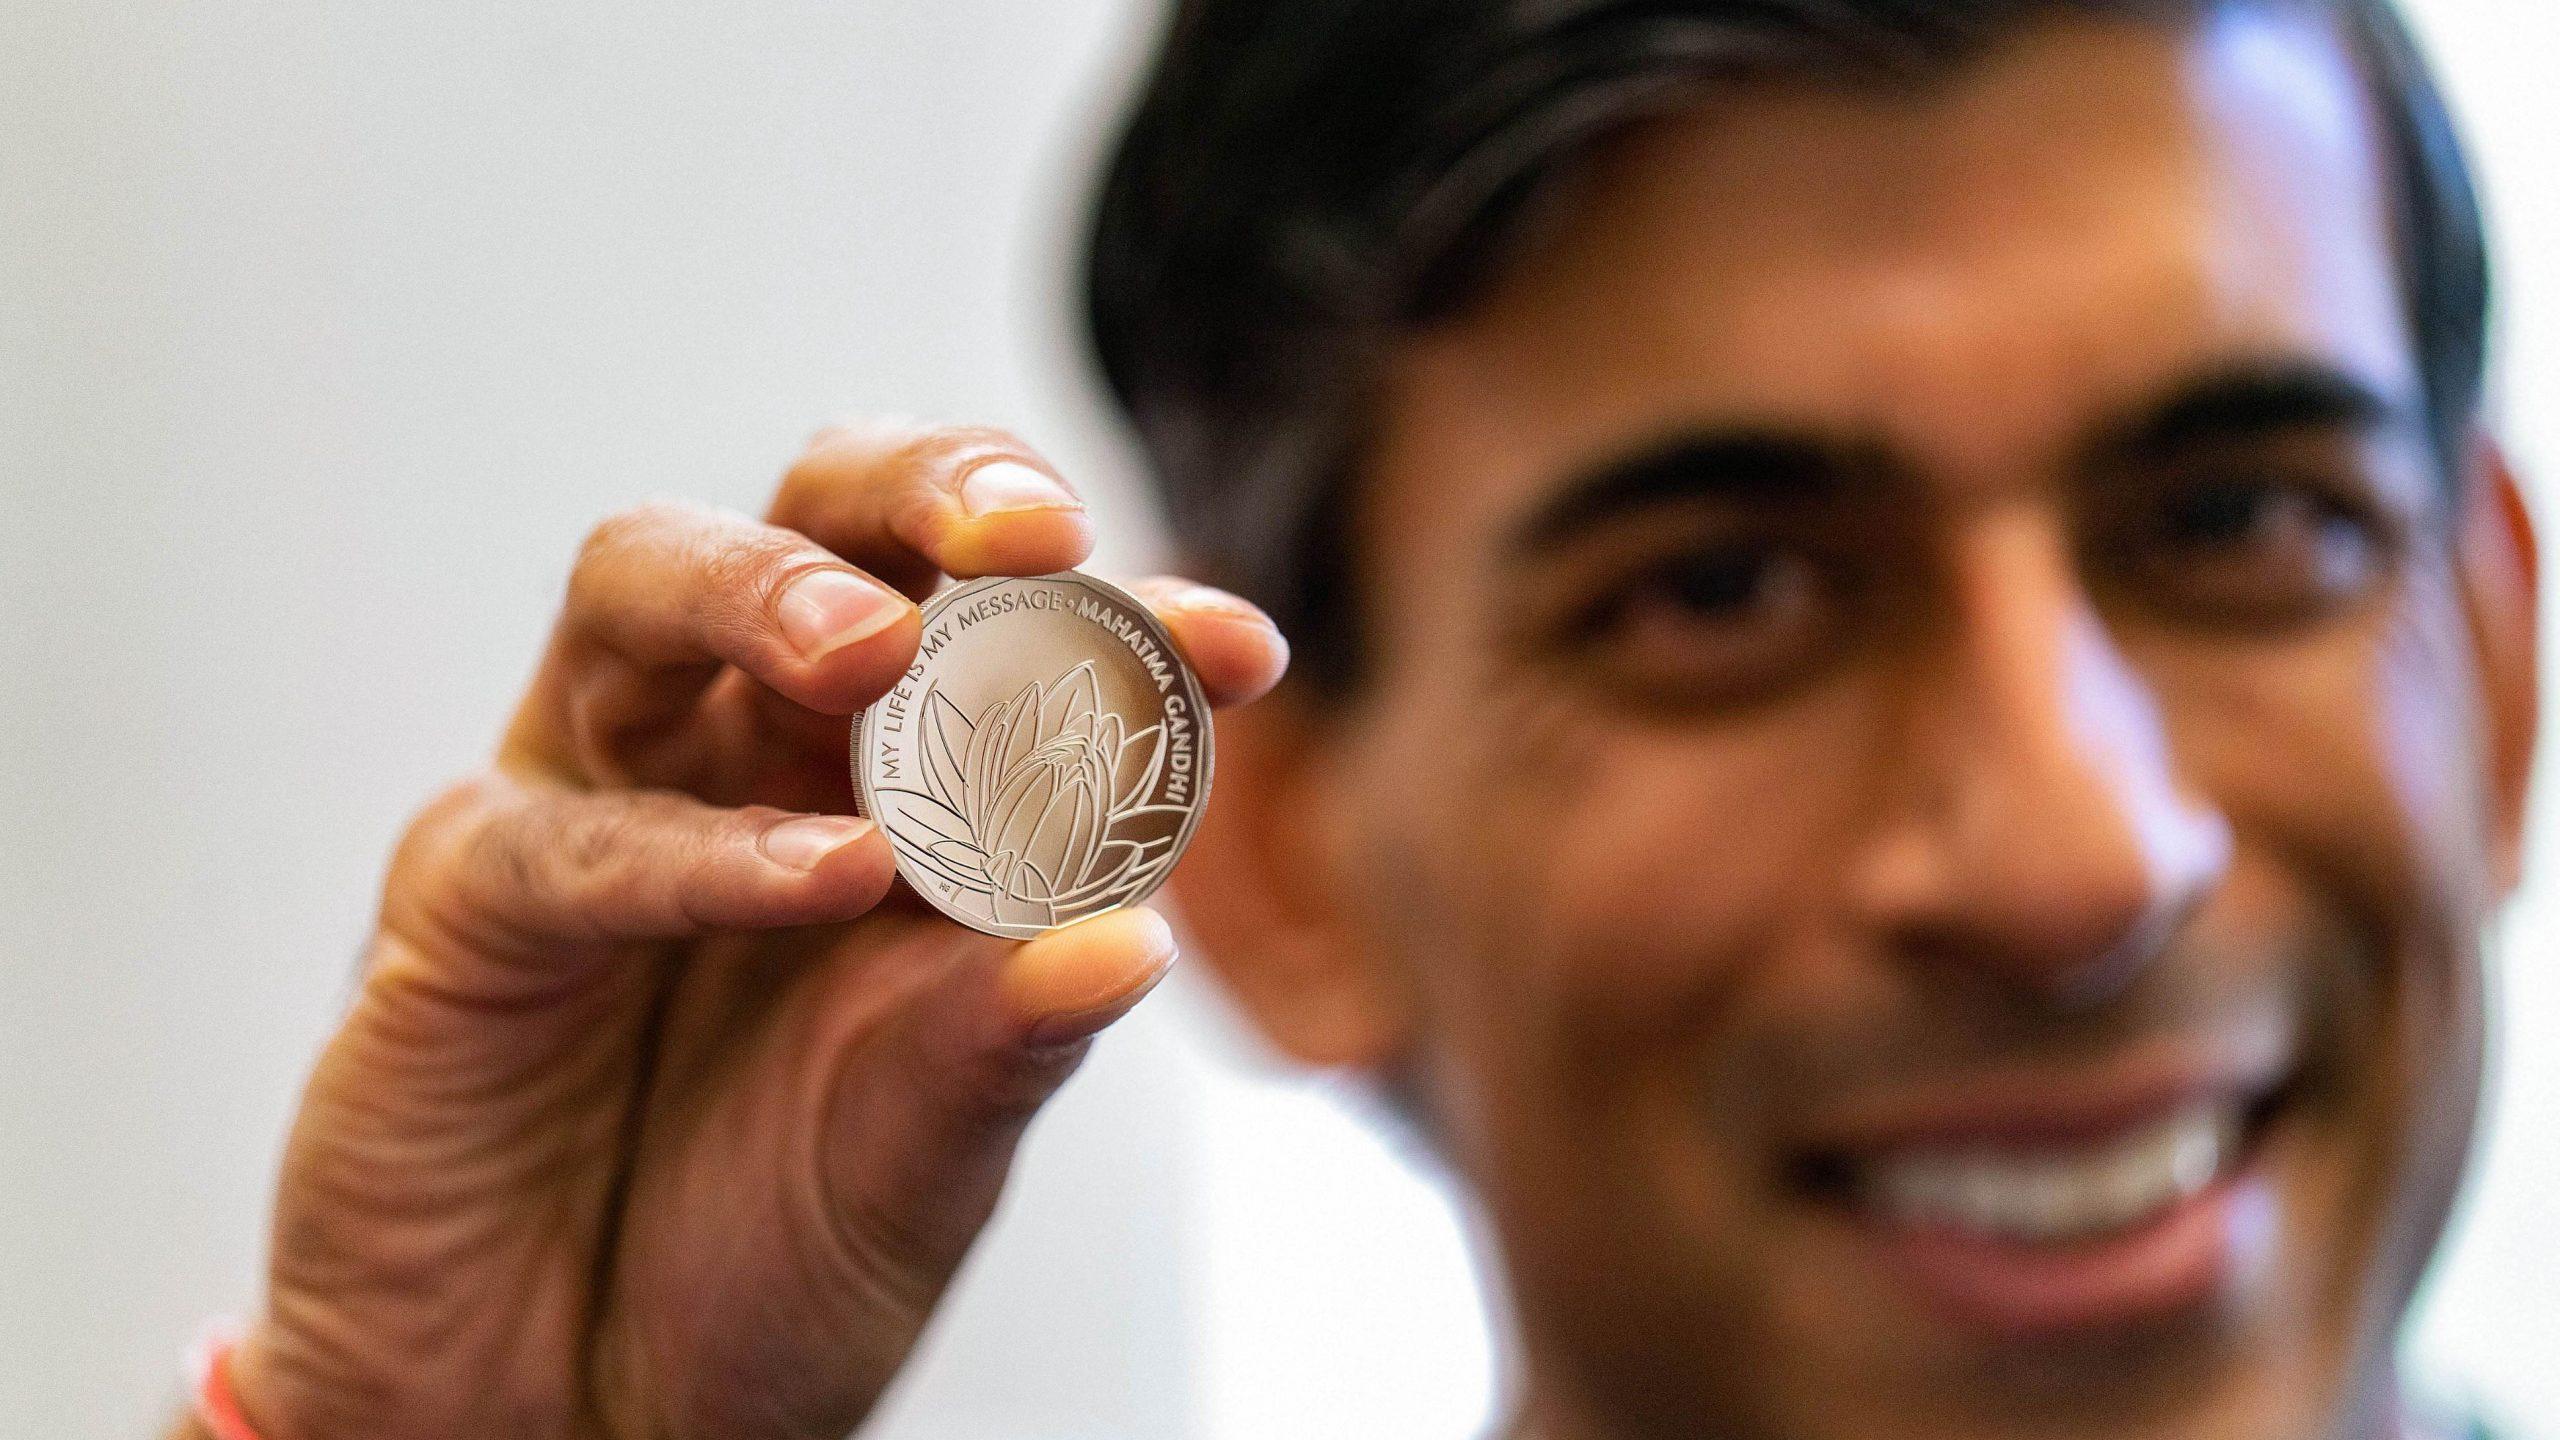 UK unveils commemorative £5 coin celebrating legacy of Mahatma Gandhi_30.1